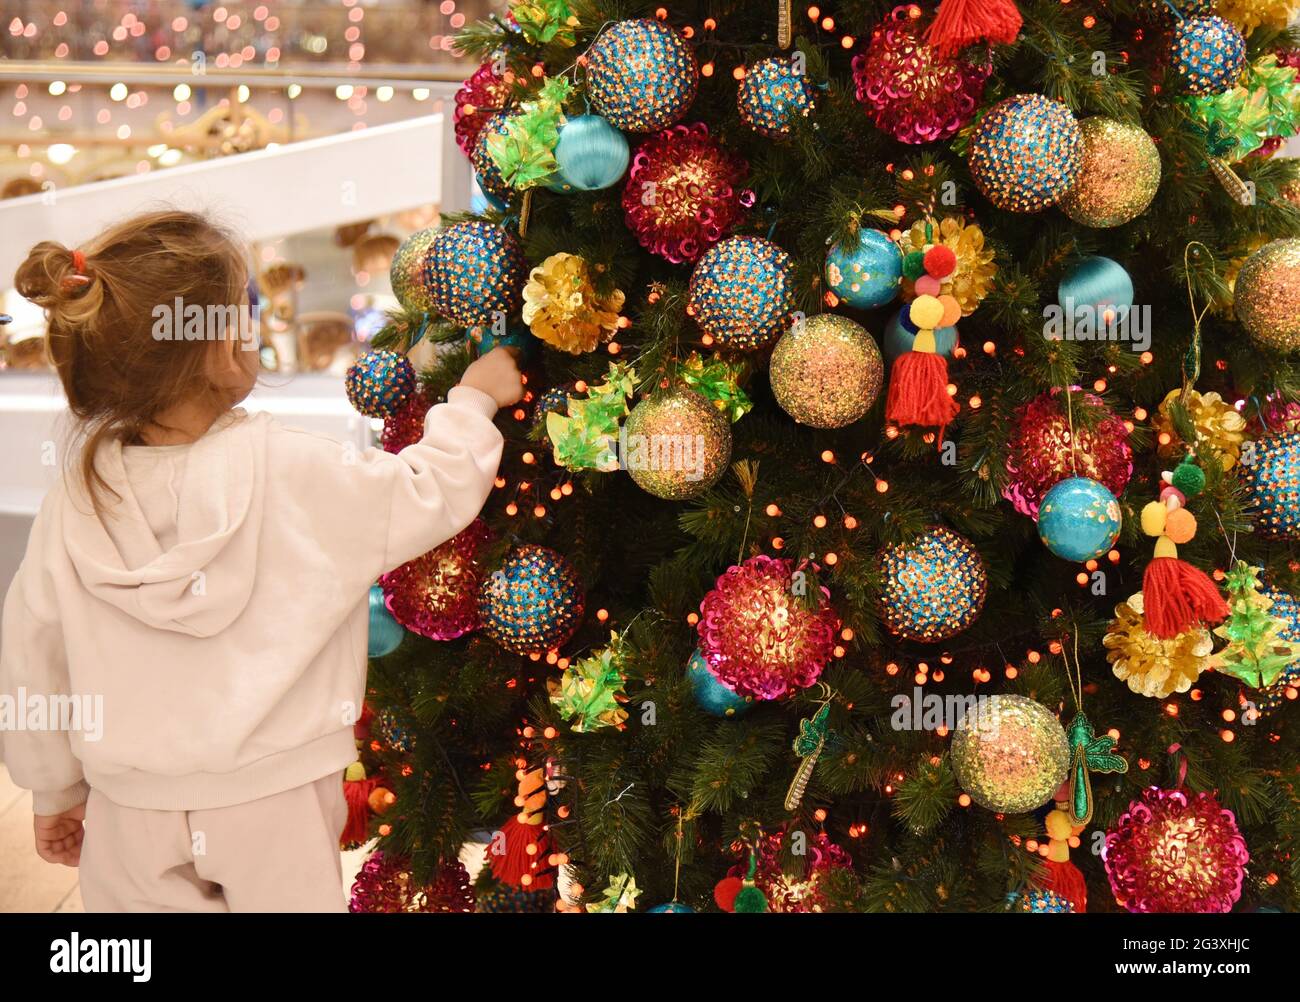 Paris (France) : décorations de Noël dans le grand magasin des Galeries Lafayette le 15 décembre 2020. Petite fille devant un Noël décoré t Banque D'Images